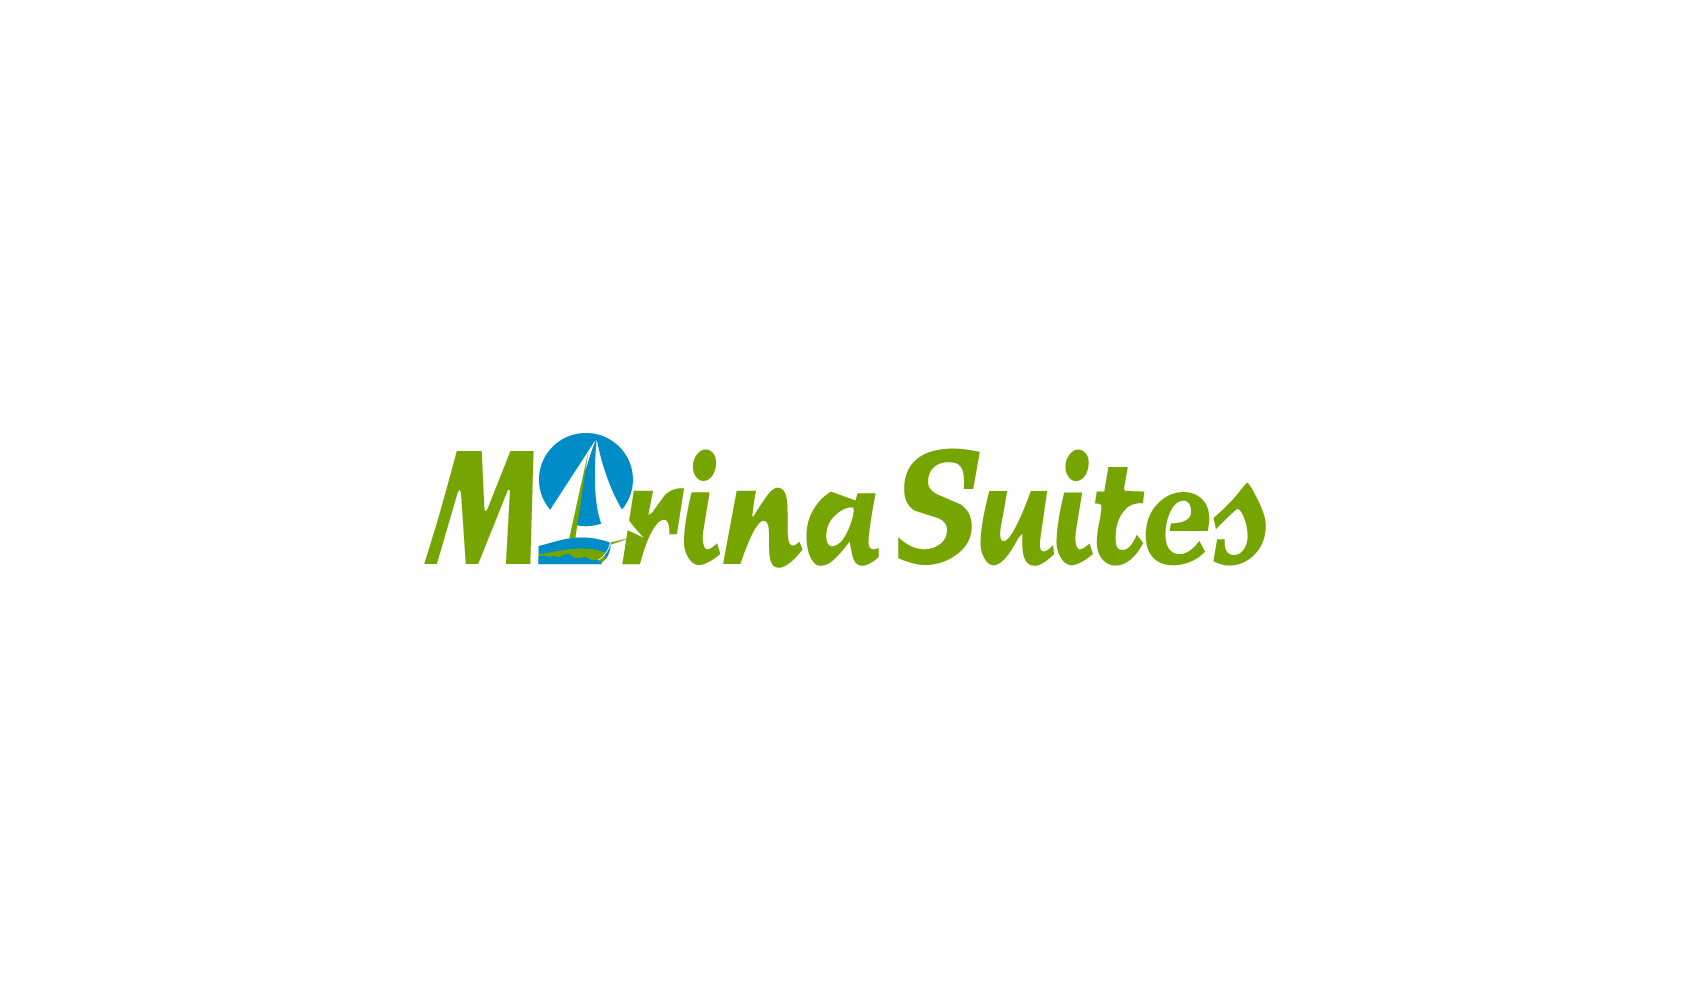 Hotel Marina Suites \ title=